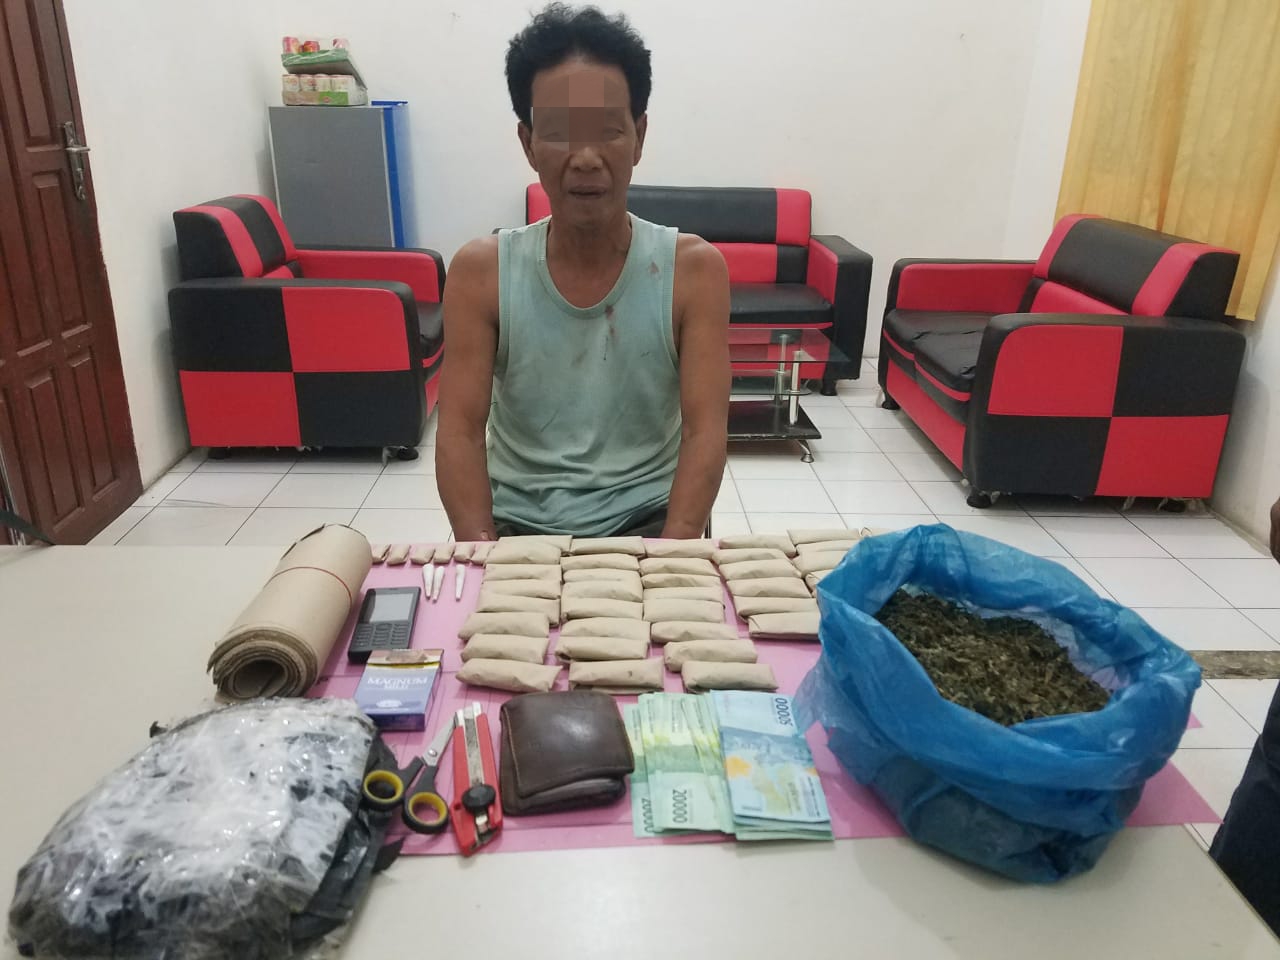 Tangkap Pelaku Narkoba di Desa Pantai Cermin Tapung, Petugas Temukan 0,6 Kg Daun Ganja Kering